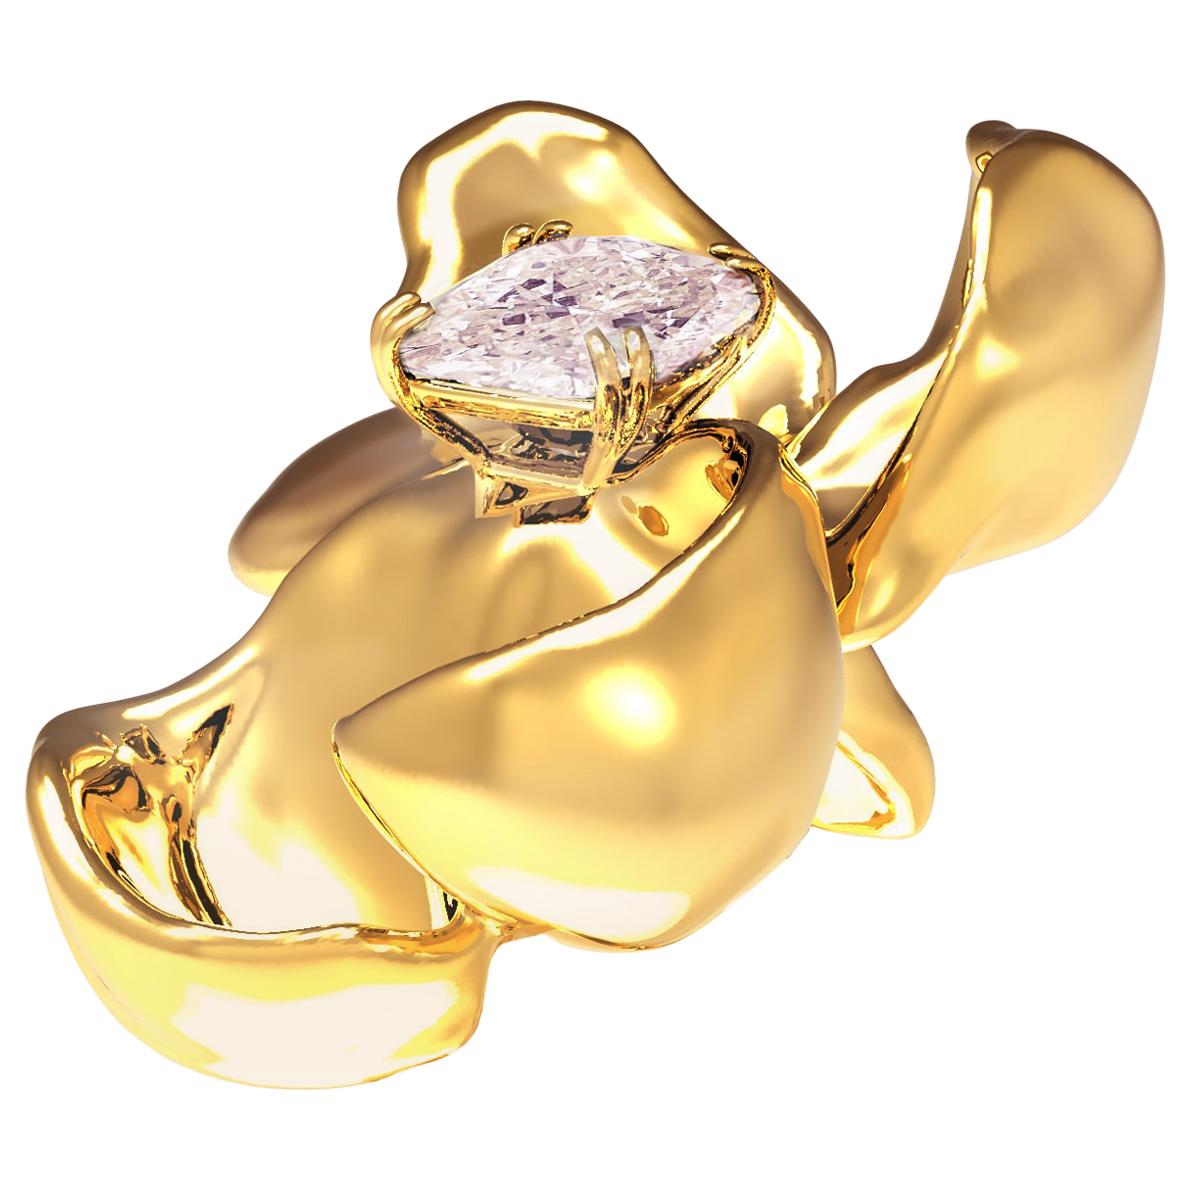 Zeitgenössische Brosche aus Gelbgold mit GIA-zertifiziertem lila-rosa Diamanten